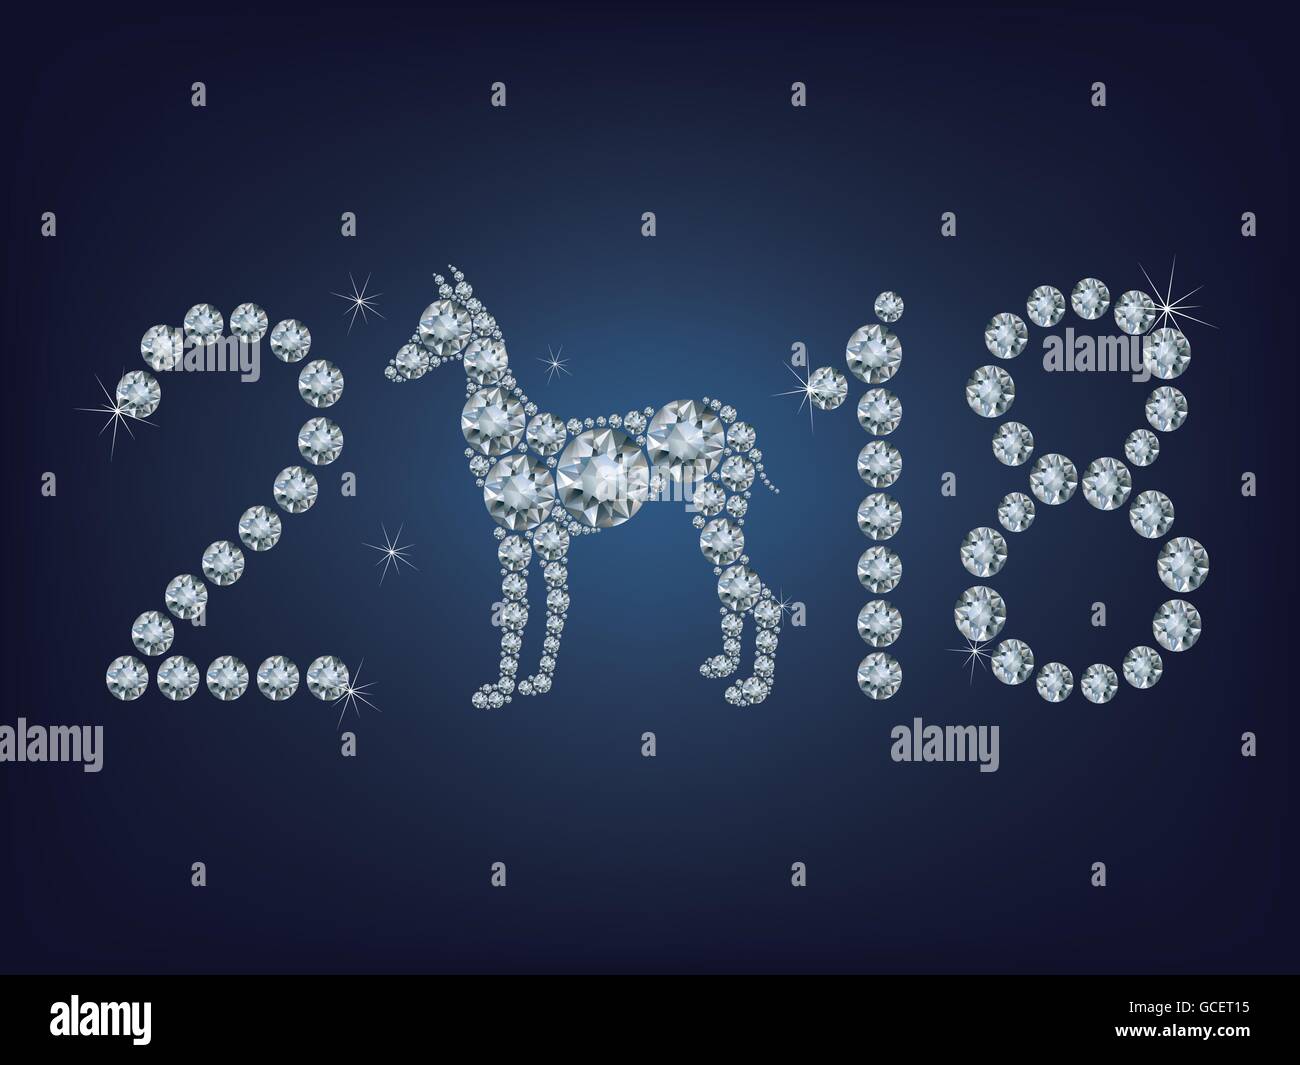 Felice anno nuovo 2018 creative della scheda Messaggi di saluto con cane composto da un sacco di diamanti Illustrazione Vettoriale